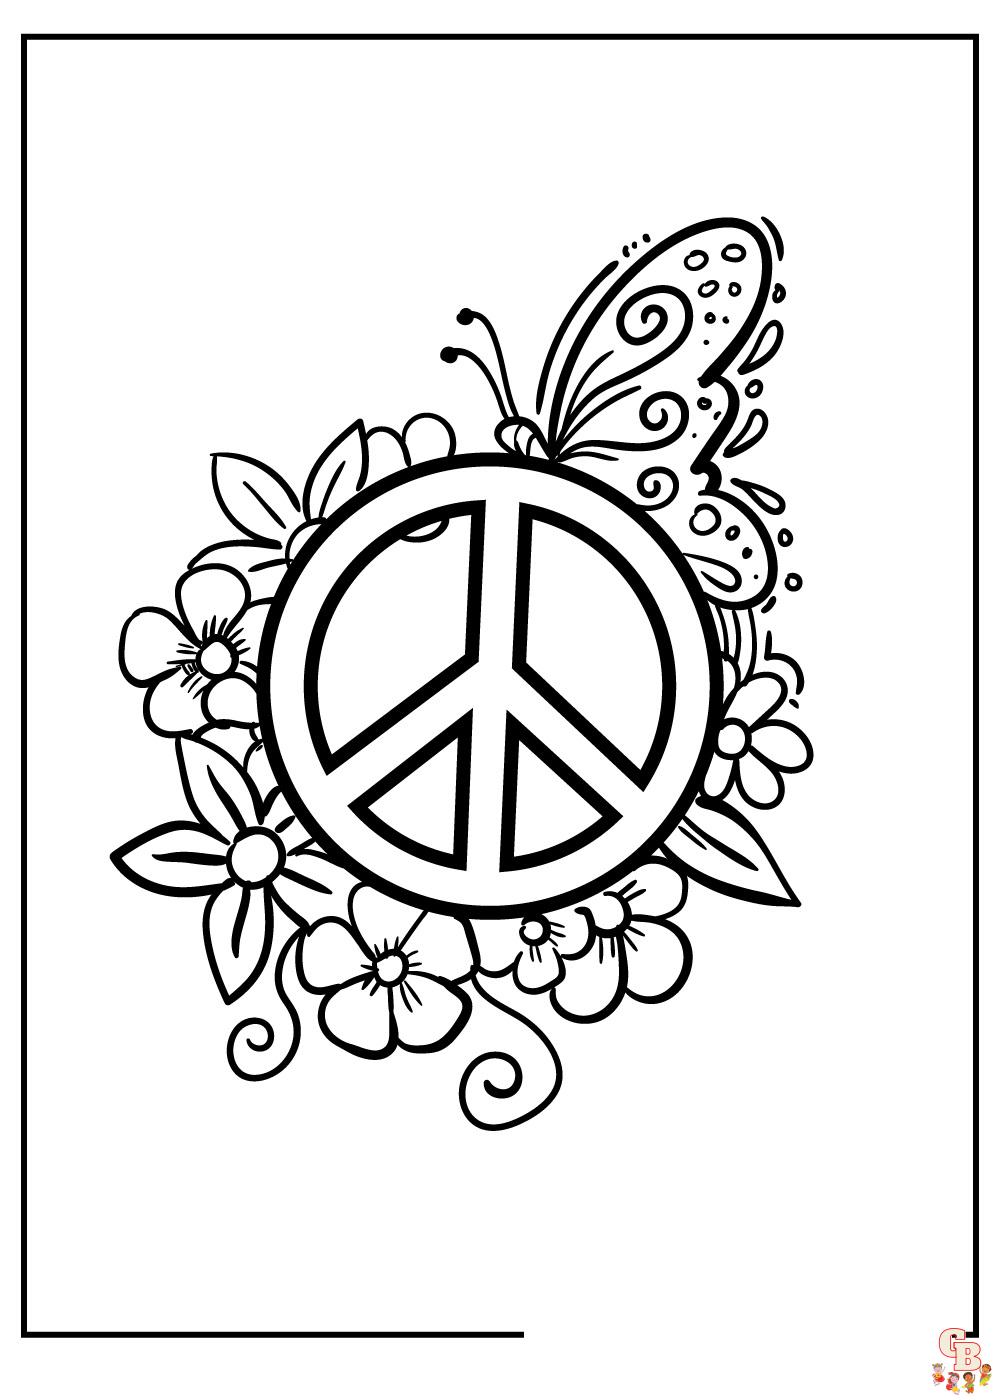 Pagine da colorare per la pace gratis - Fogli stampabili per bambini